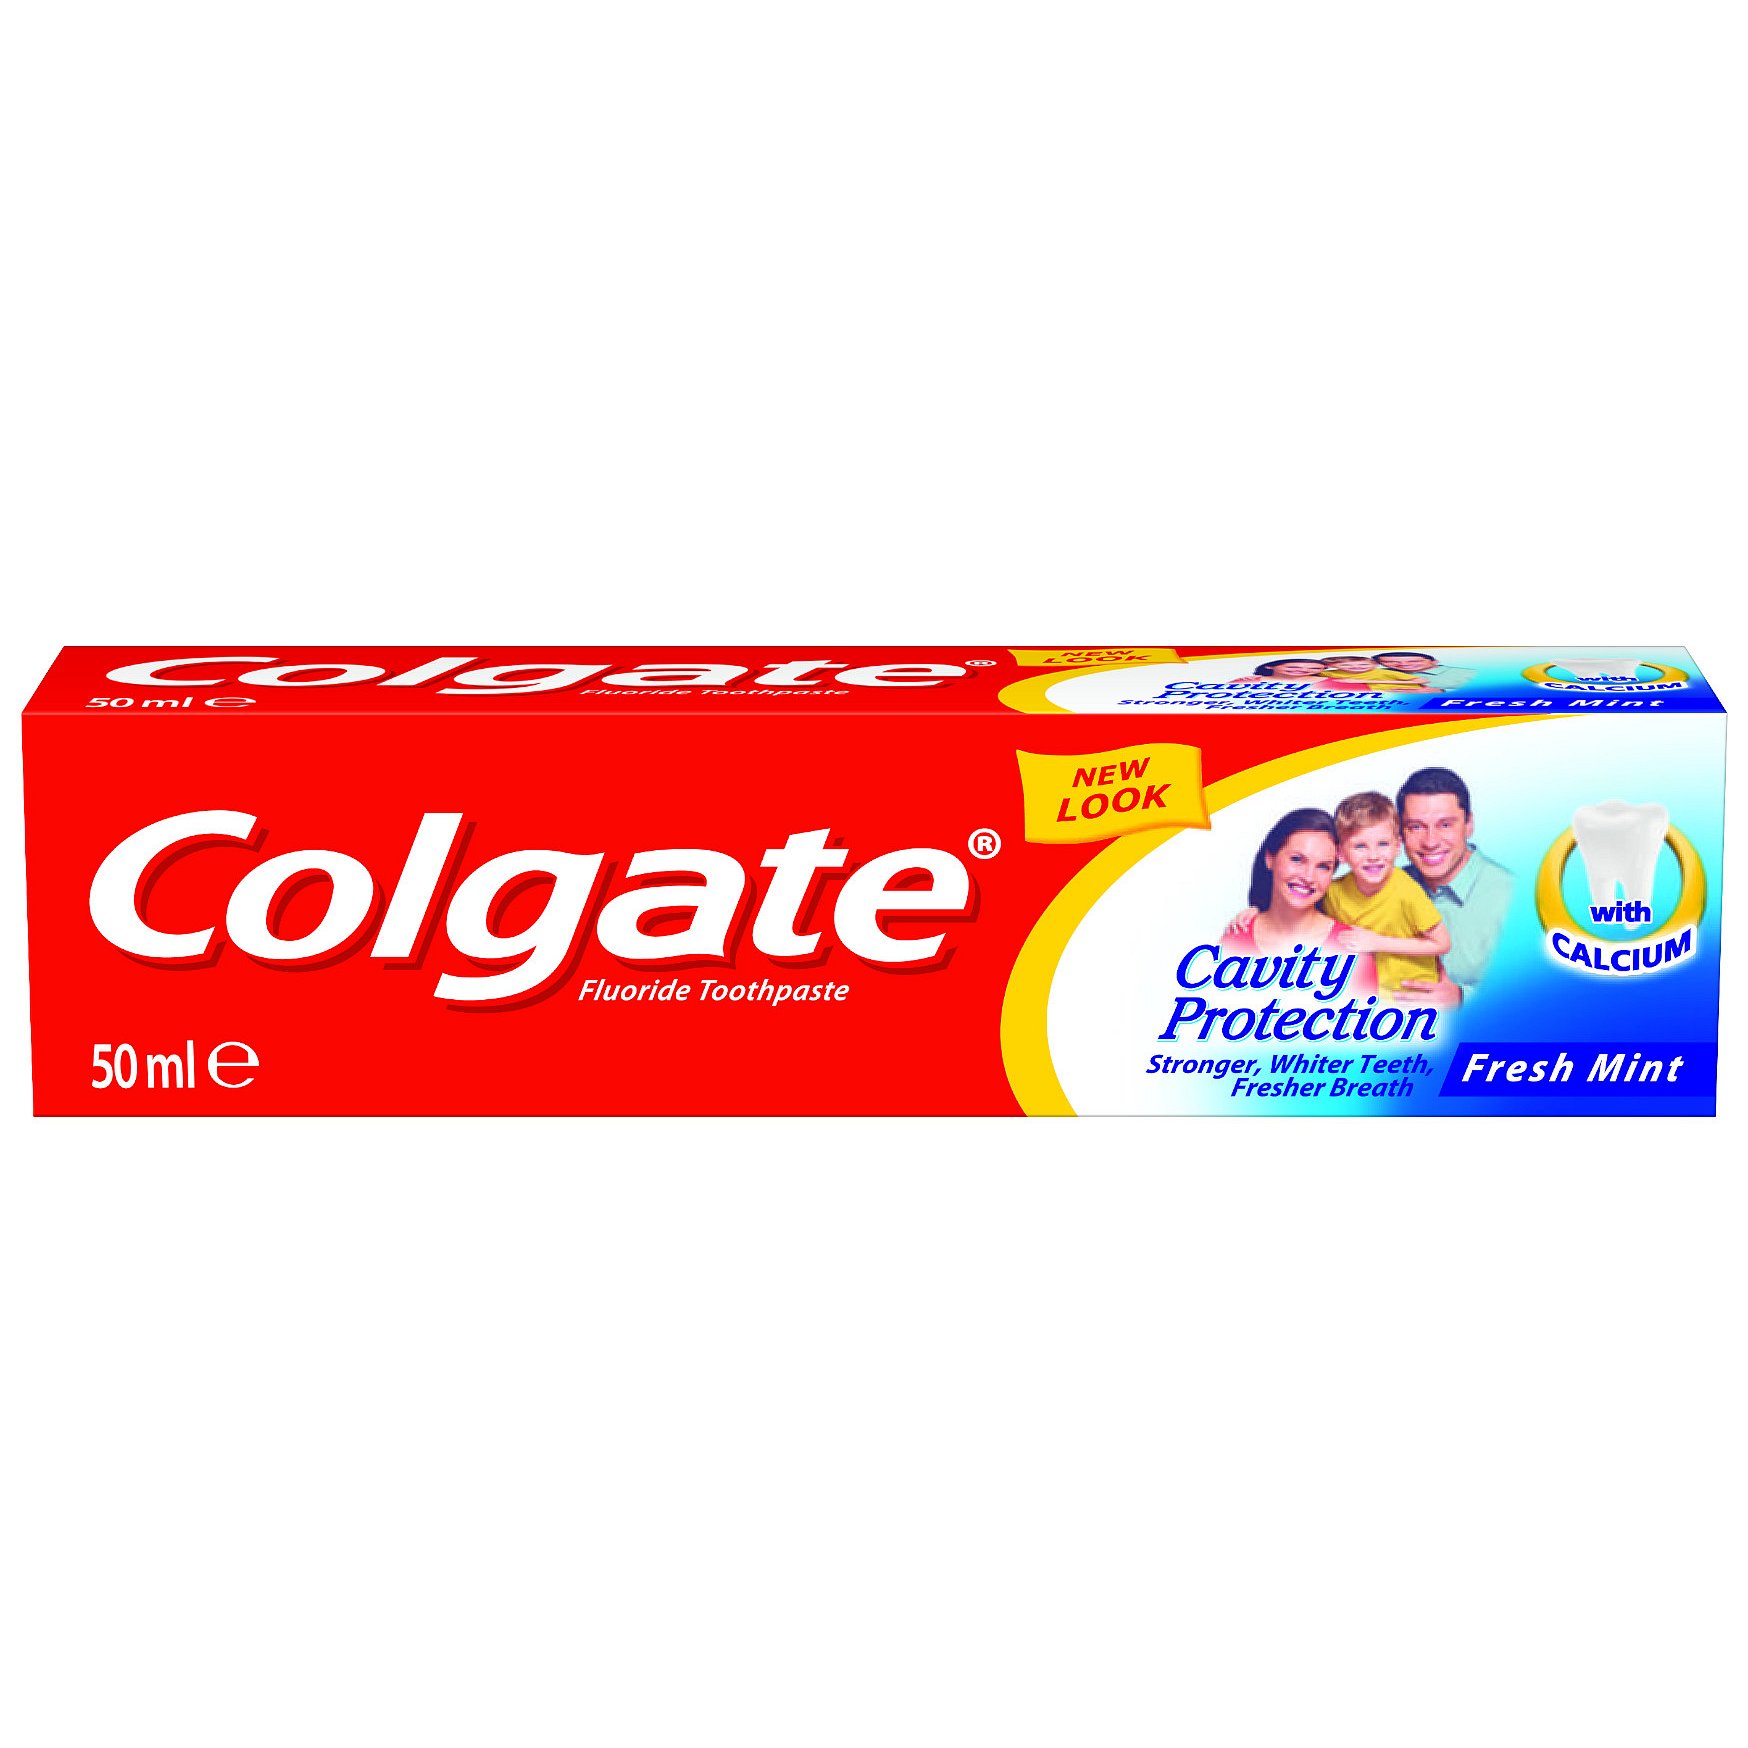 Colgate Zubní pasta Cavity Protection 50ml